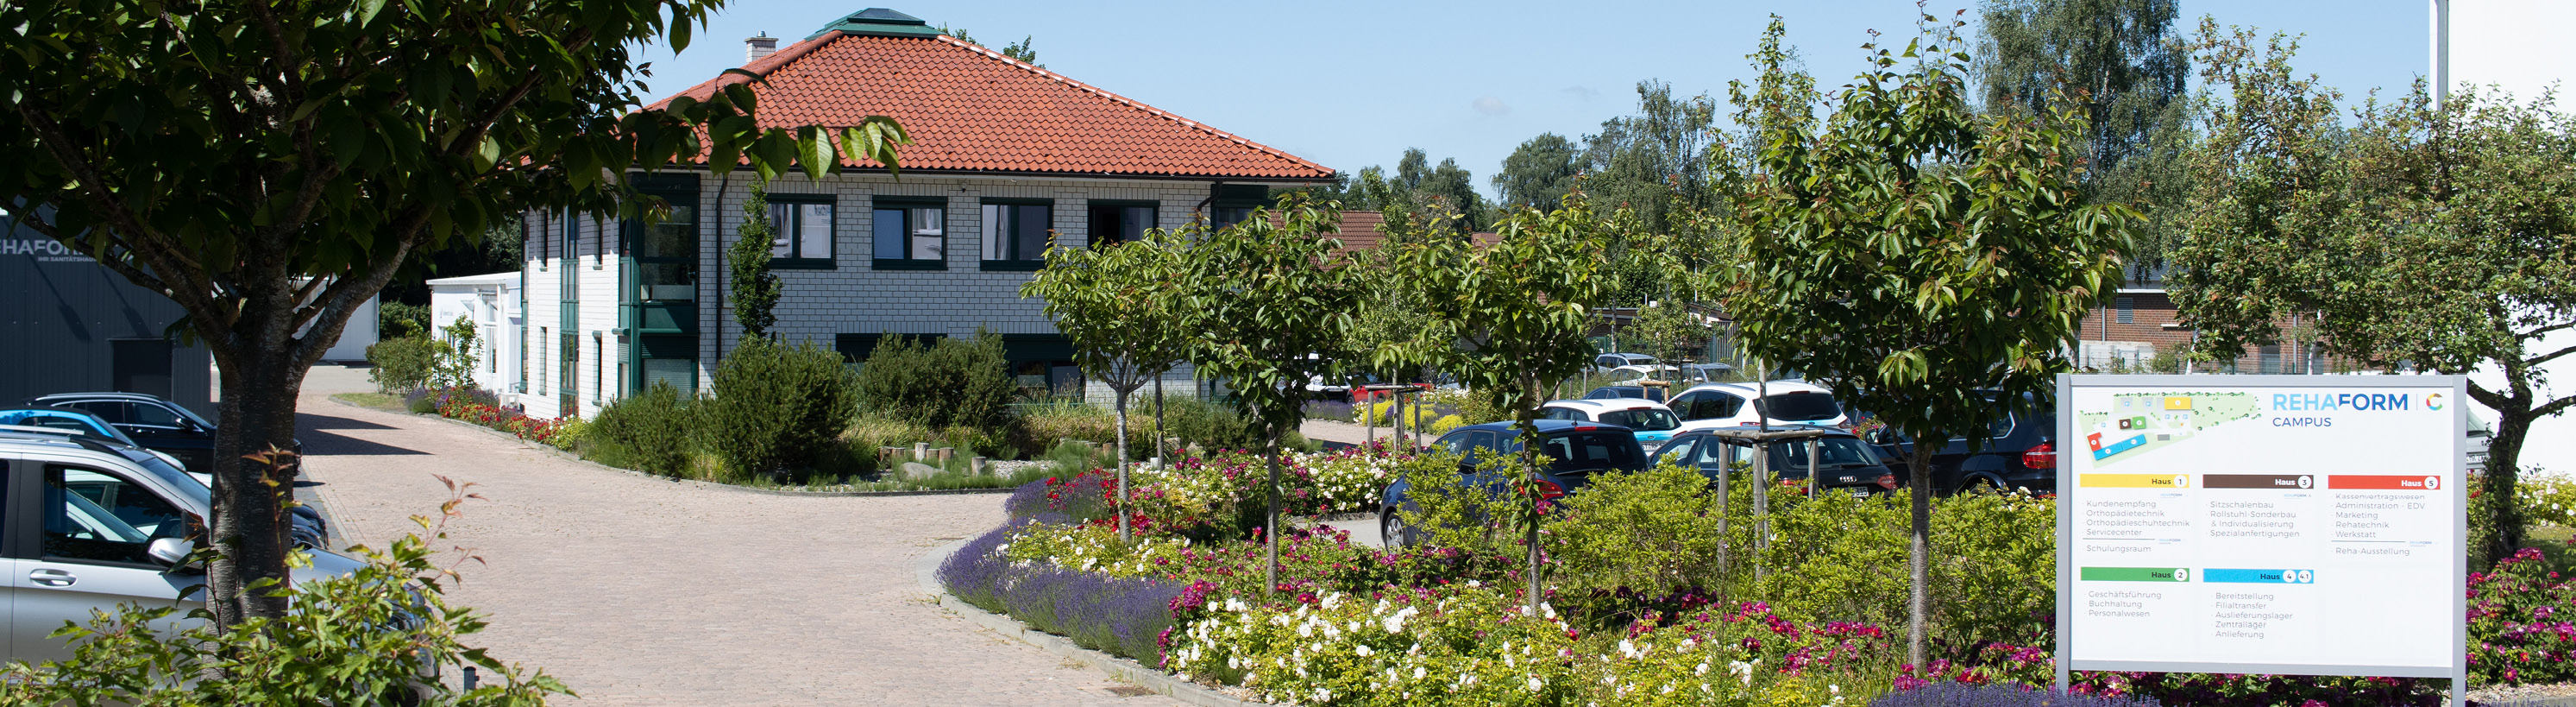 Rehaform Sanitätshaus Stralsund